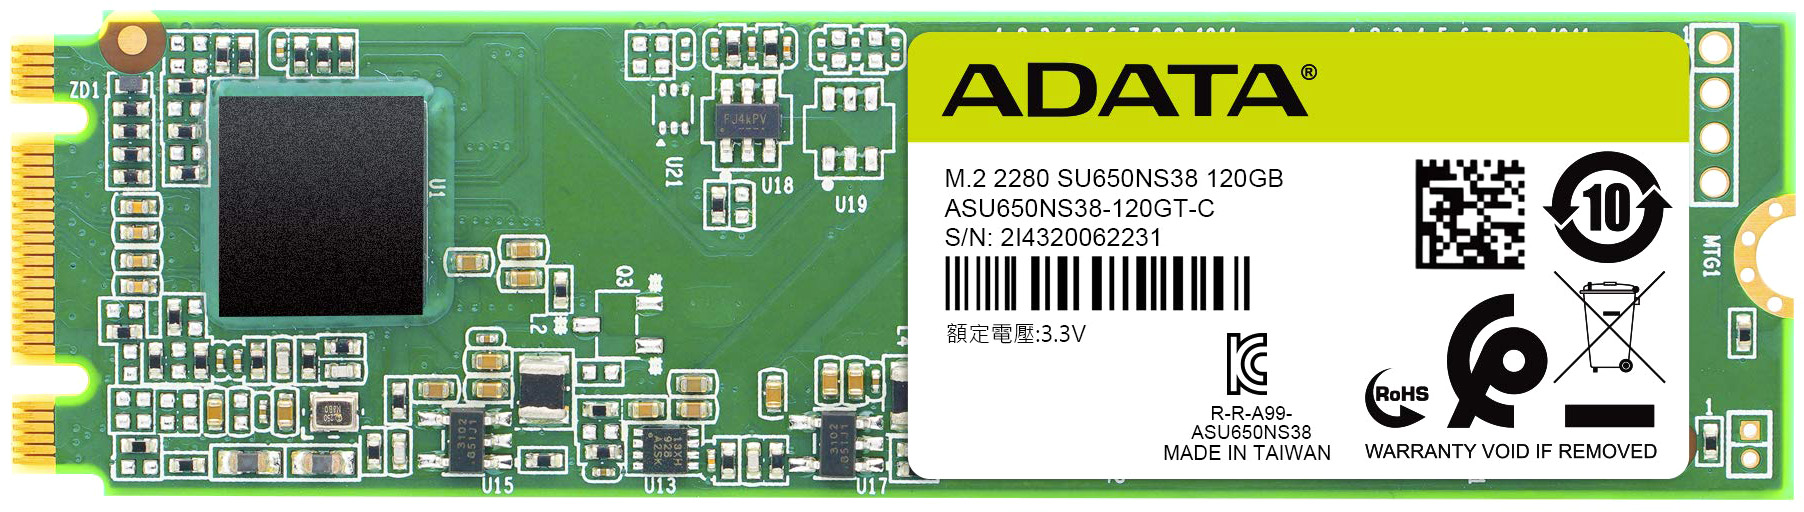 SSD накопитель ADATA Ultimate SU650 M.2 2280 120 ГБ (ASU650NS38-120GT-C) - купить в Москве, цены в интернет-магазинах Мегамаркет